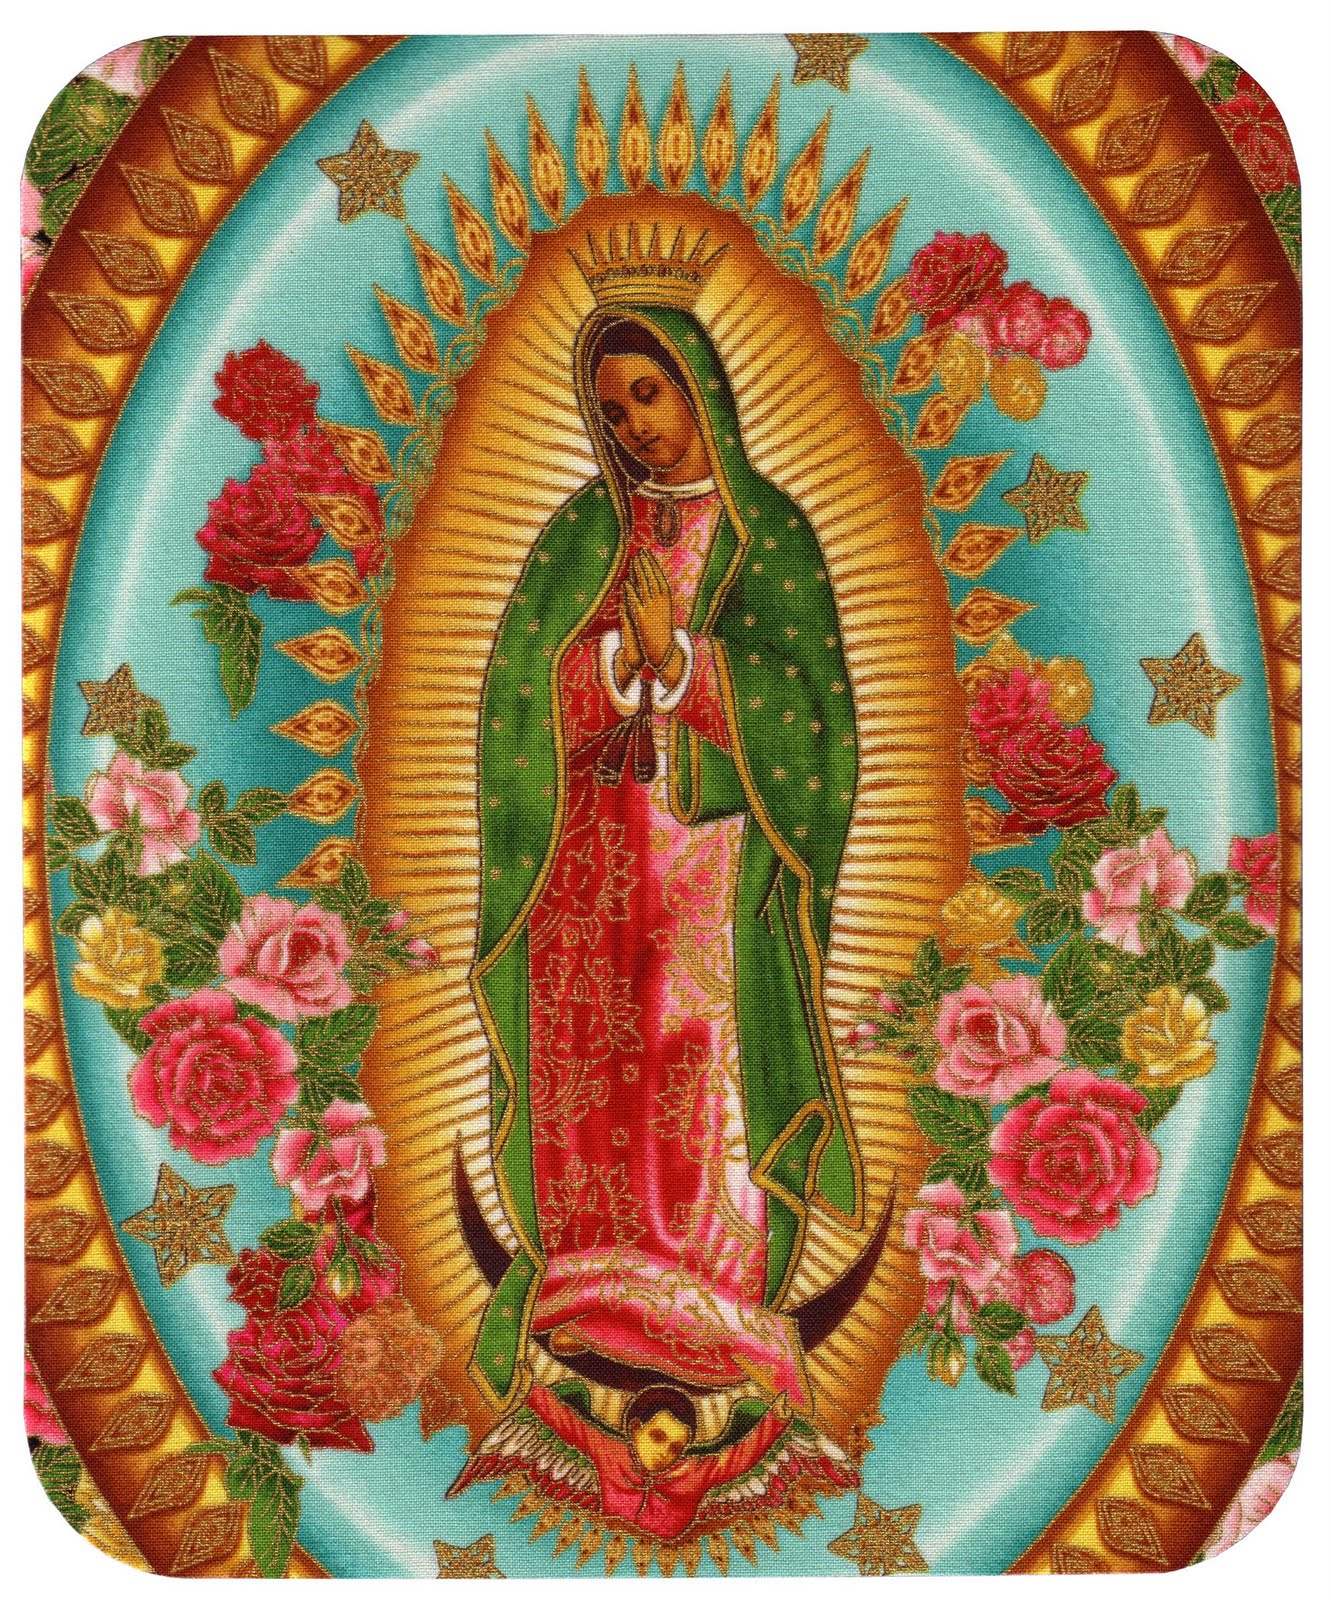 Lista 90+ Foto Silueta De La Virgen De Guadalupe El último